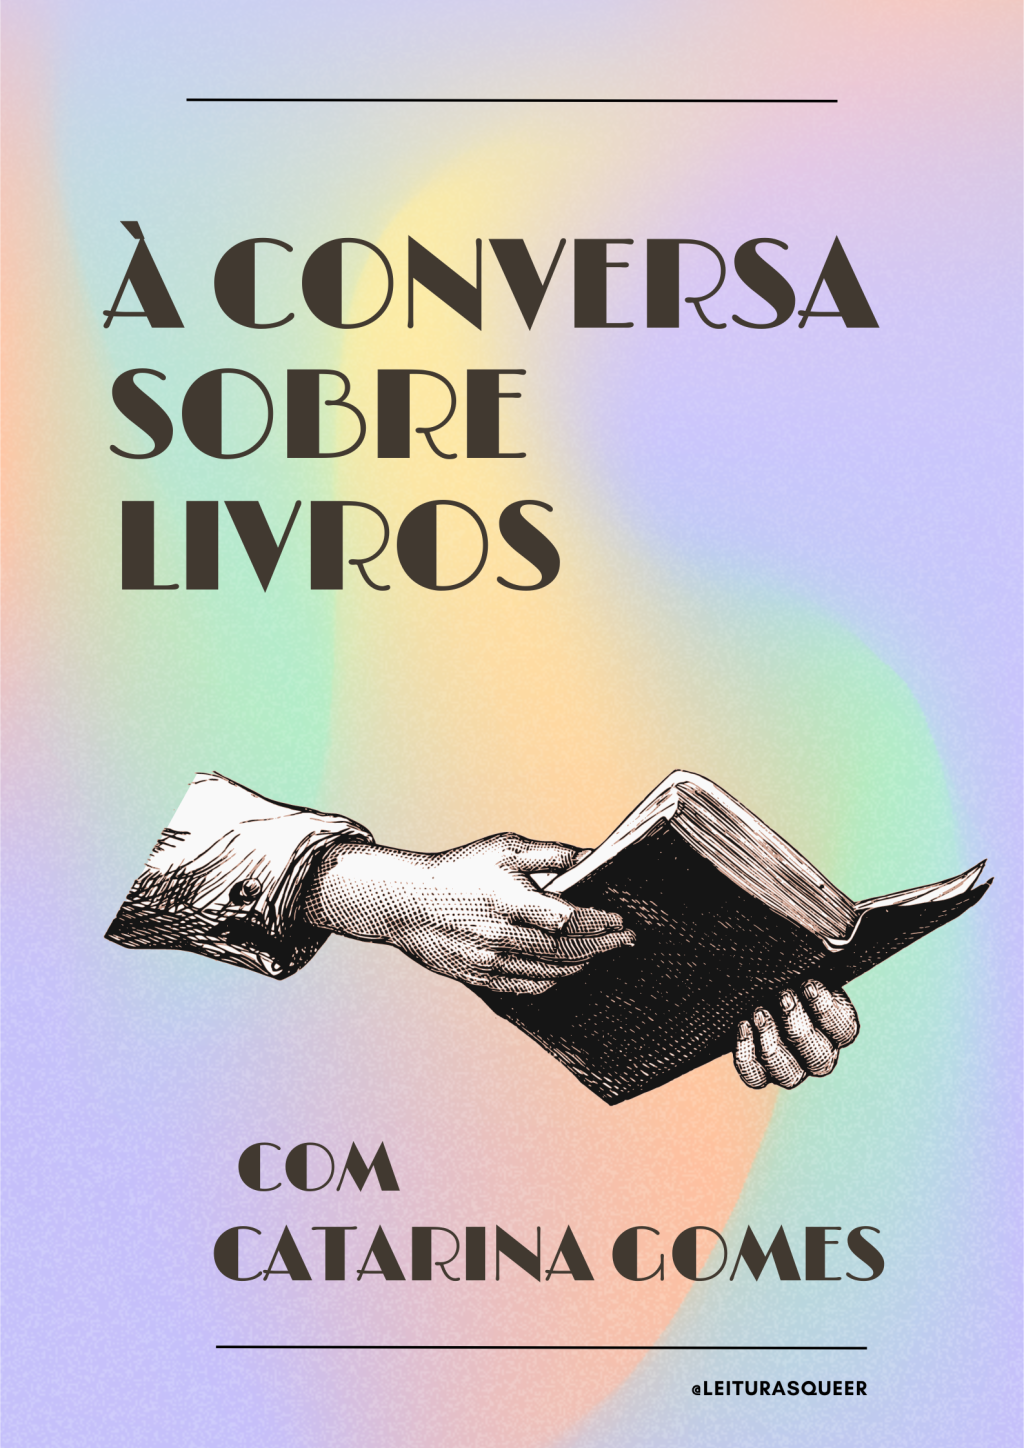 À Conversa sobre Livros com Catarina Gomes